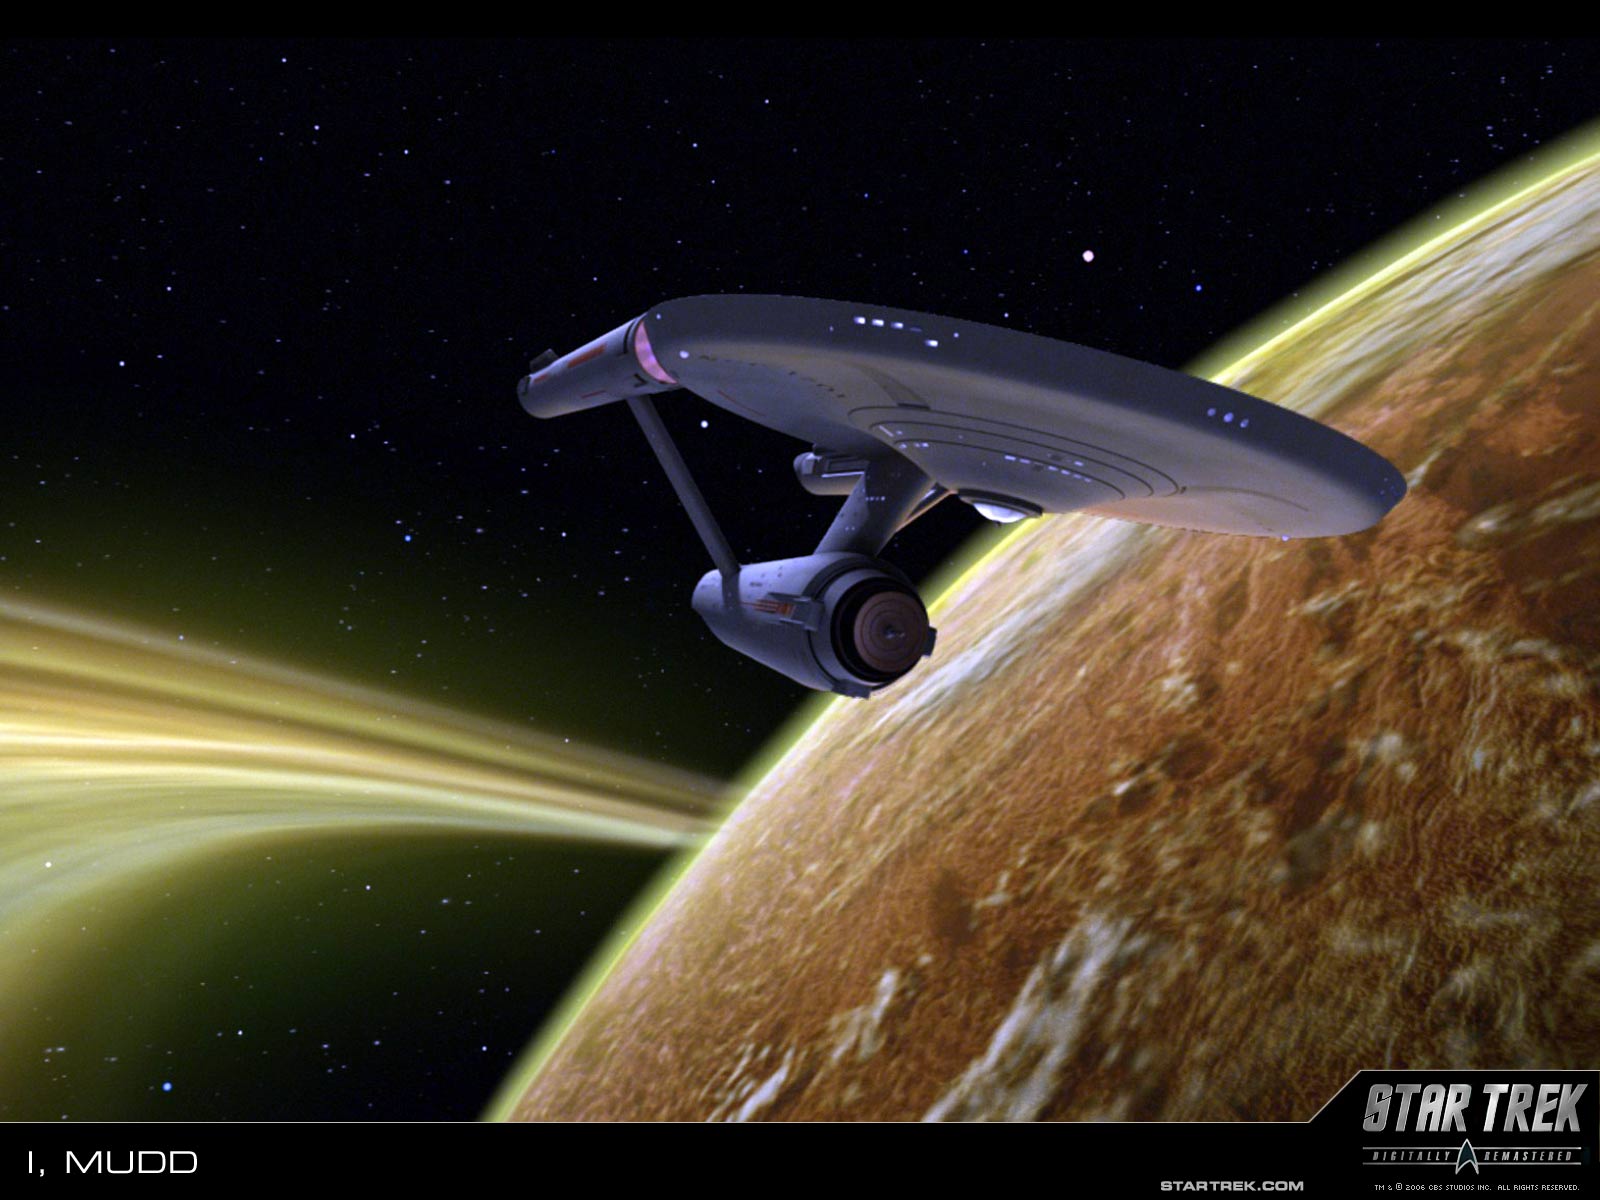 Wallpaper Trekcore Star Trek Original Series Screencaps